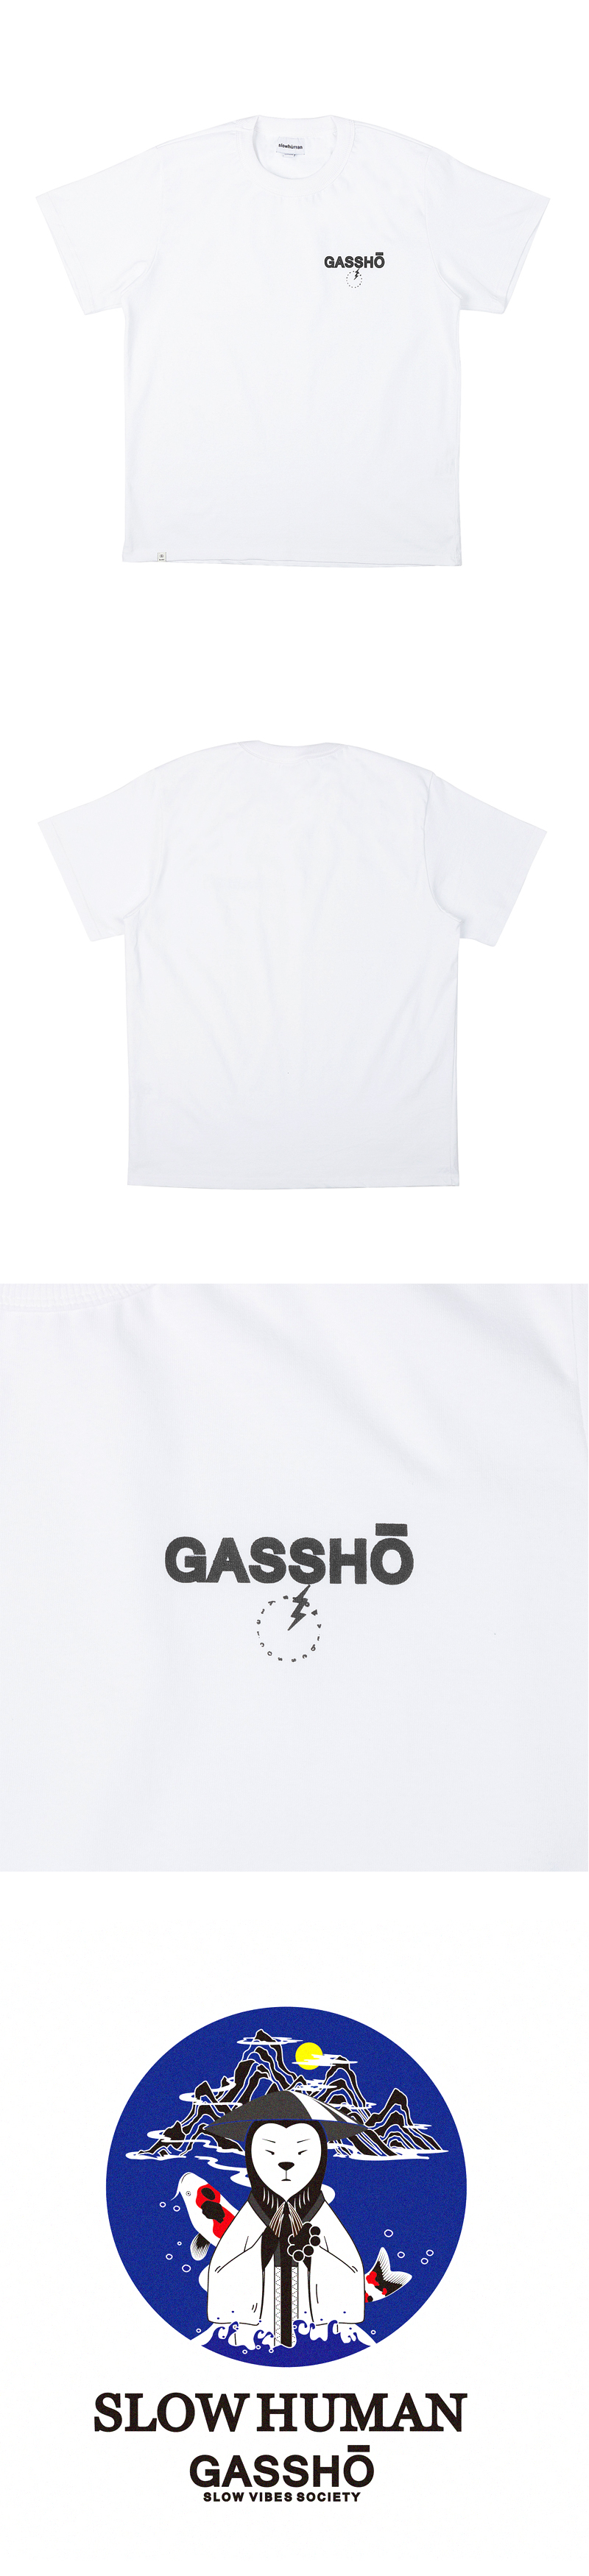 GASSHO_HALF_WHITE.jpg